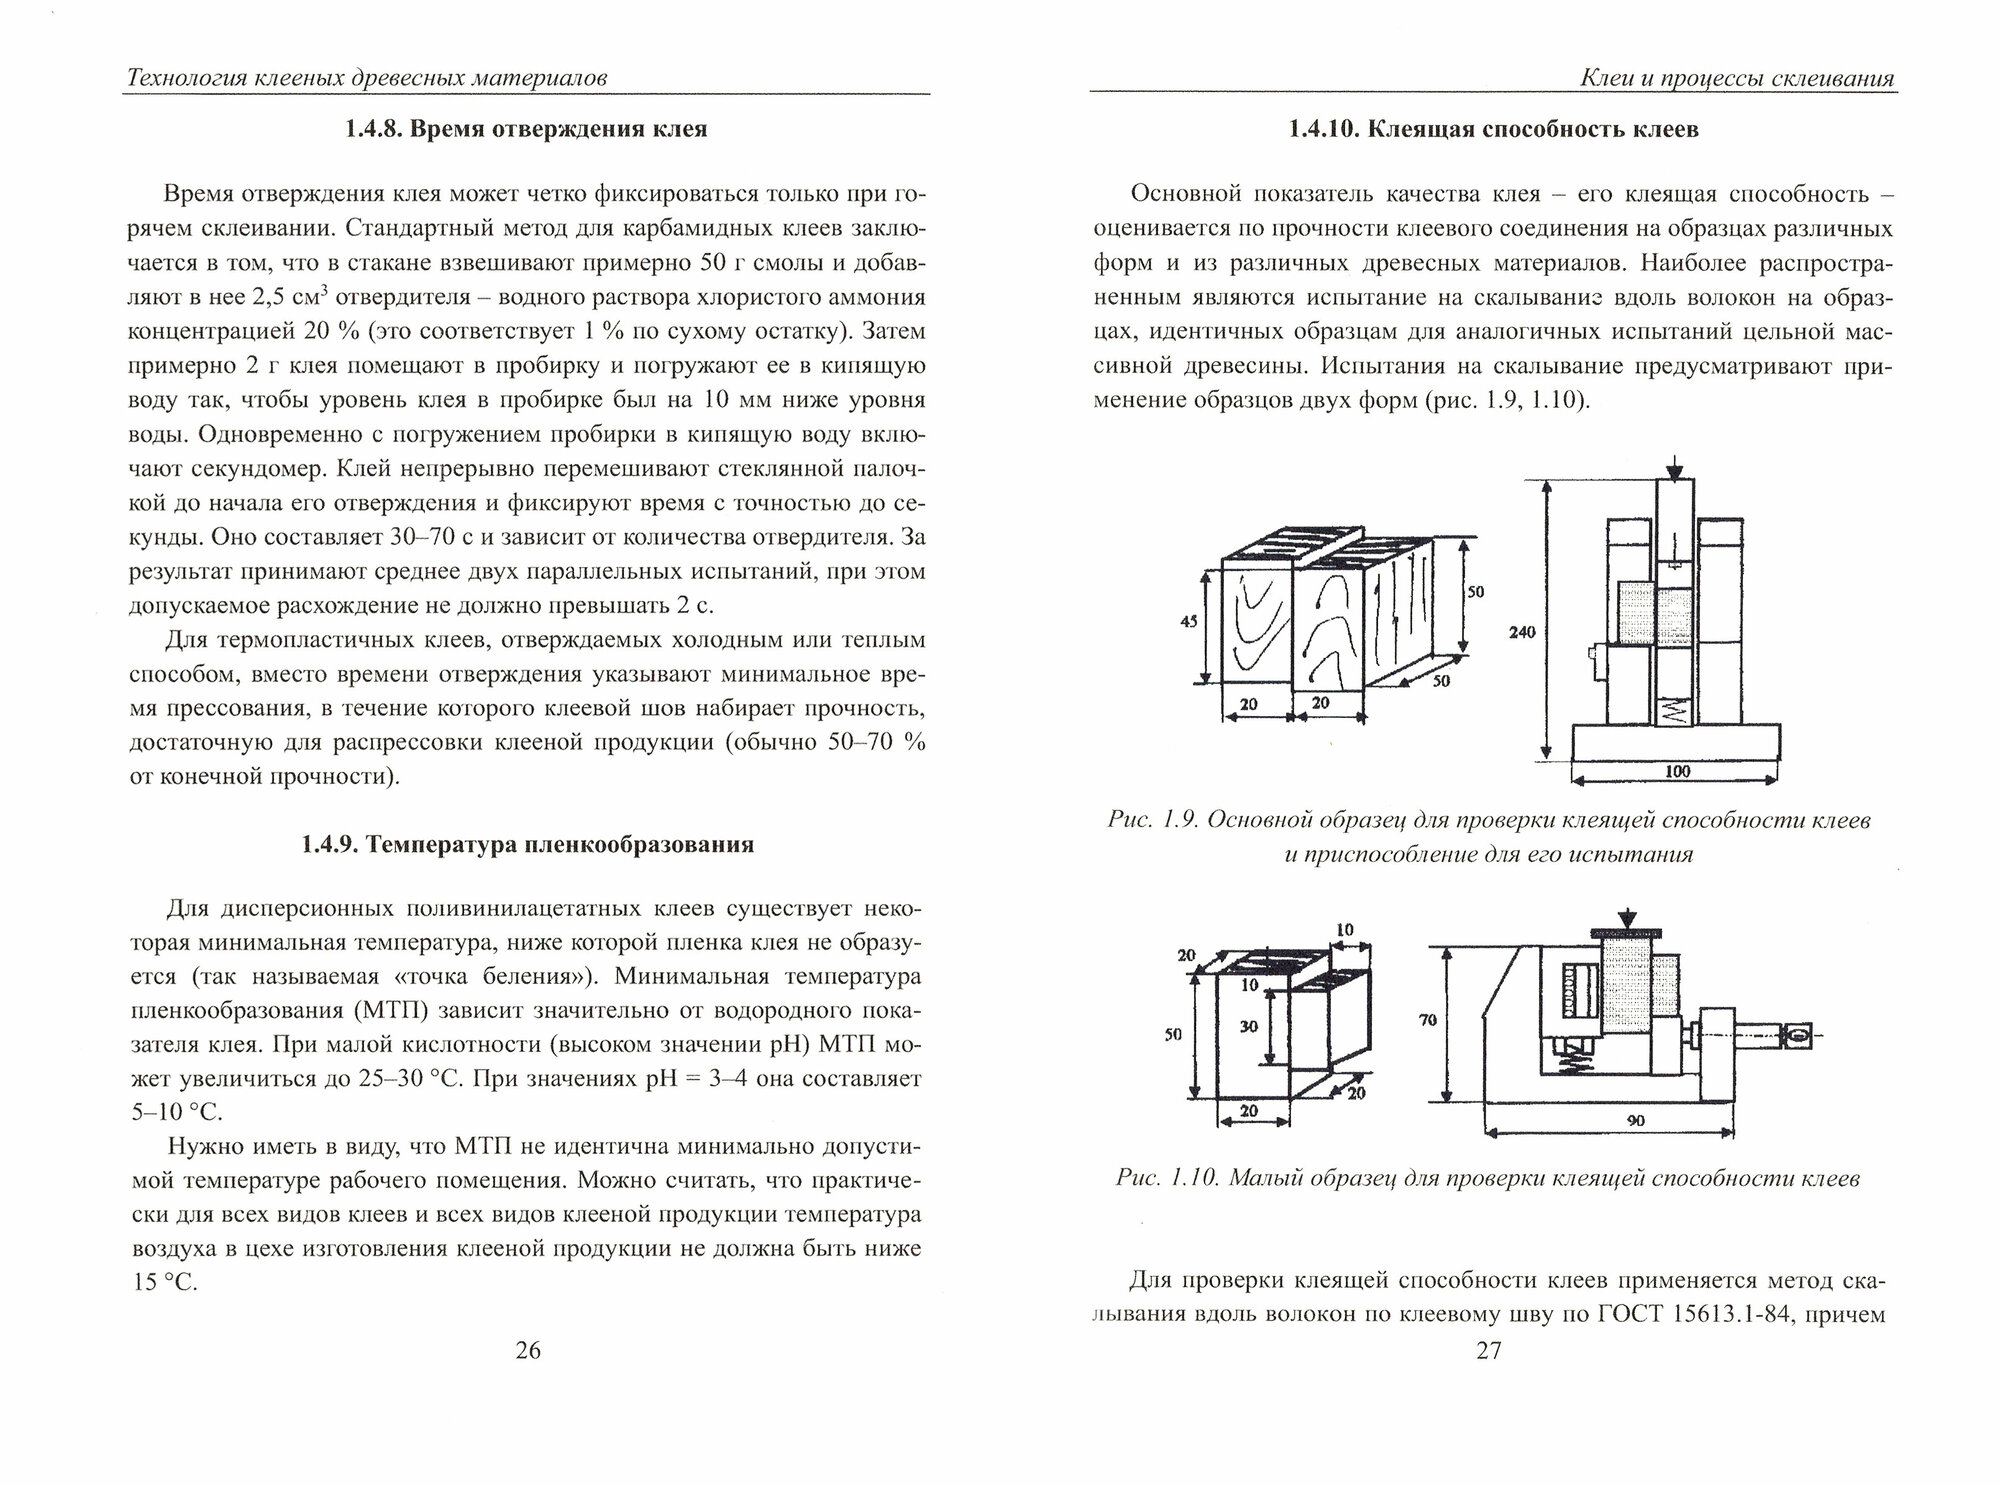 Технология клееных древесных материалов. Комплект в 2-х томах - фото №4